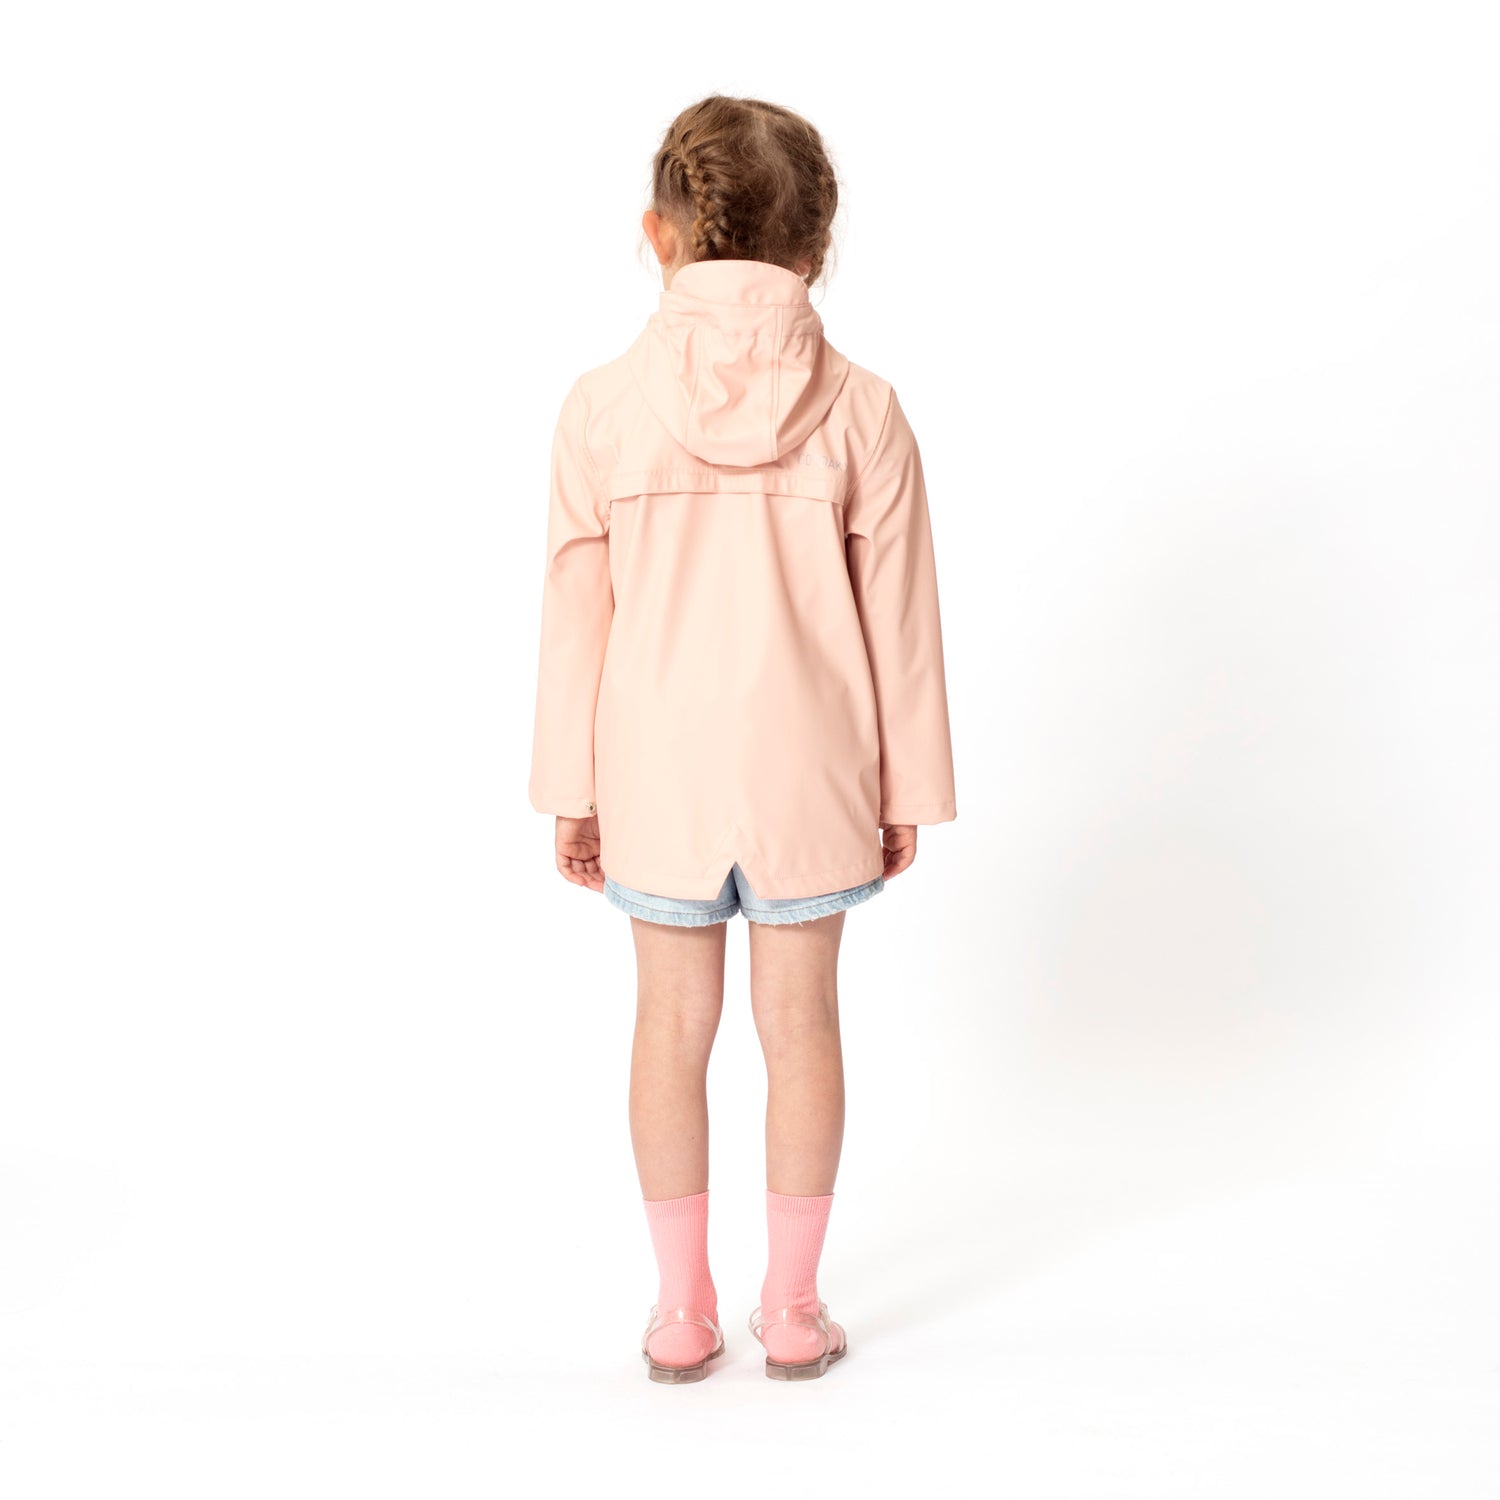 GOSOAKY-ELEPHANT-MAN-Product-Image-rainwear-raincoat-for-kids